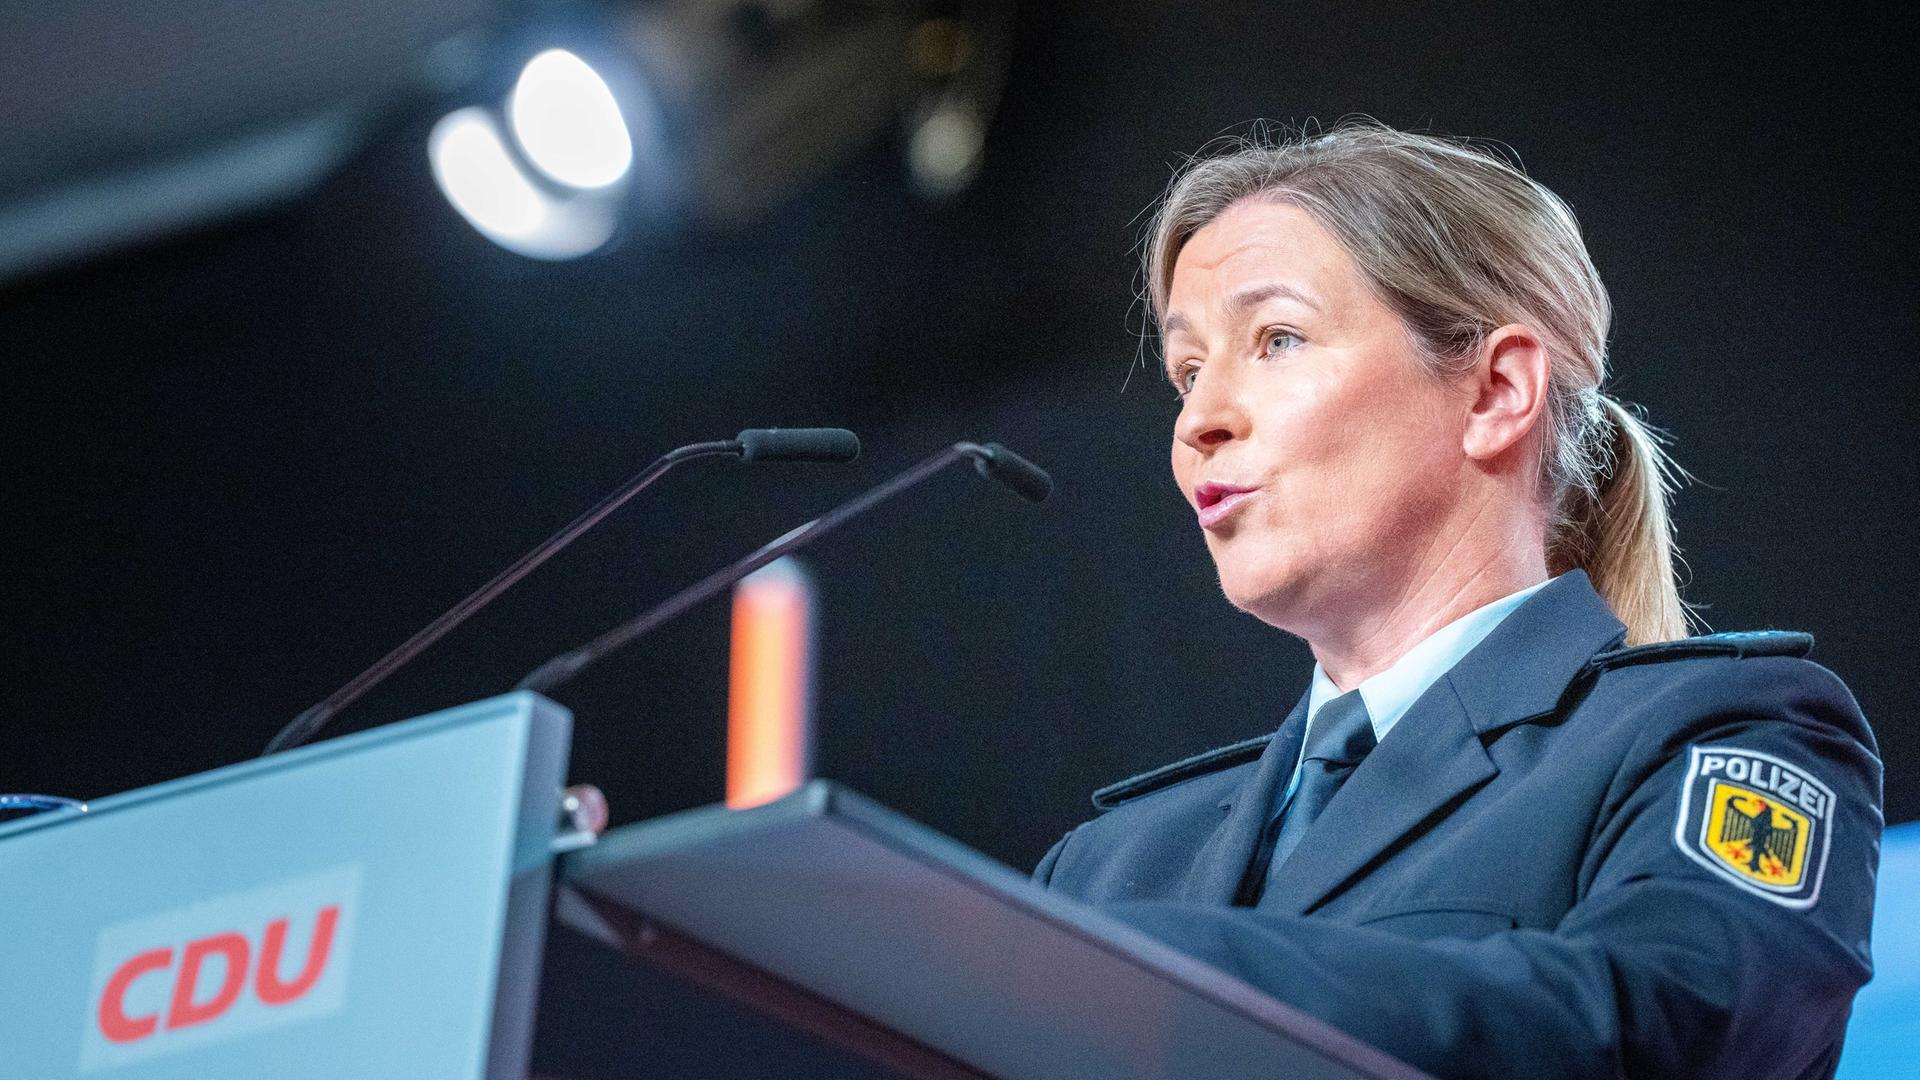 Claudia Pechstein spricht beim CDU-Grundsatzkonvent. Sie trägt eine Uniform mit einem Aufnäher "Bundespolizei" am linken Oberarm.